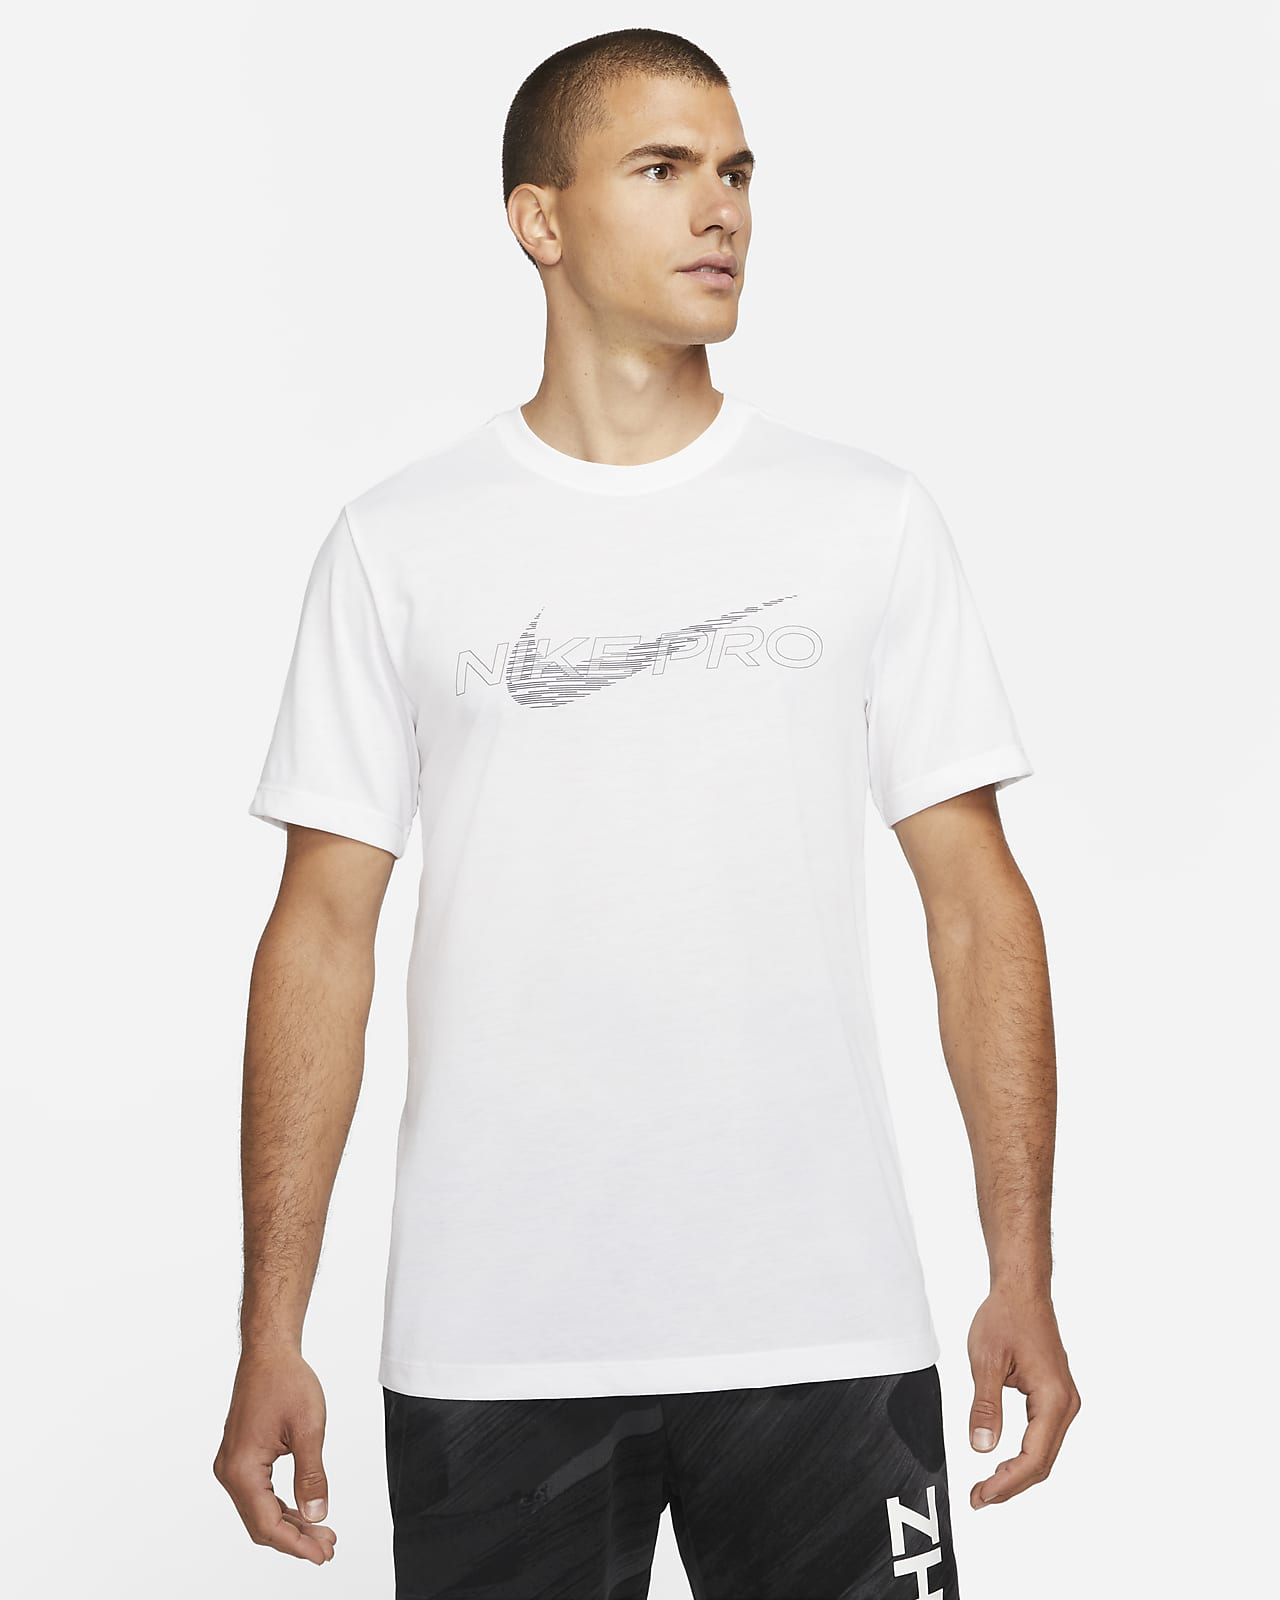 Nike Pro Dri-FIT Men's Graphic T-Shirt